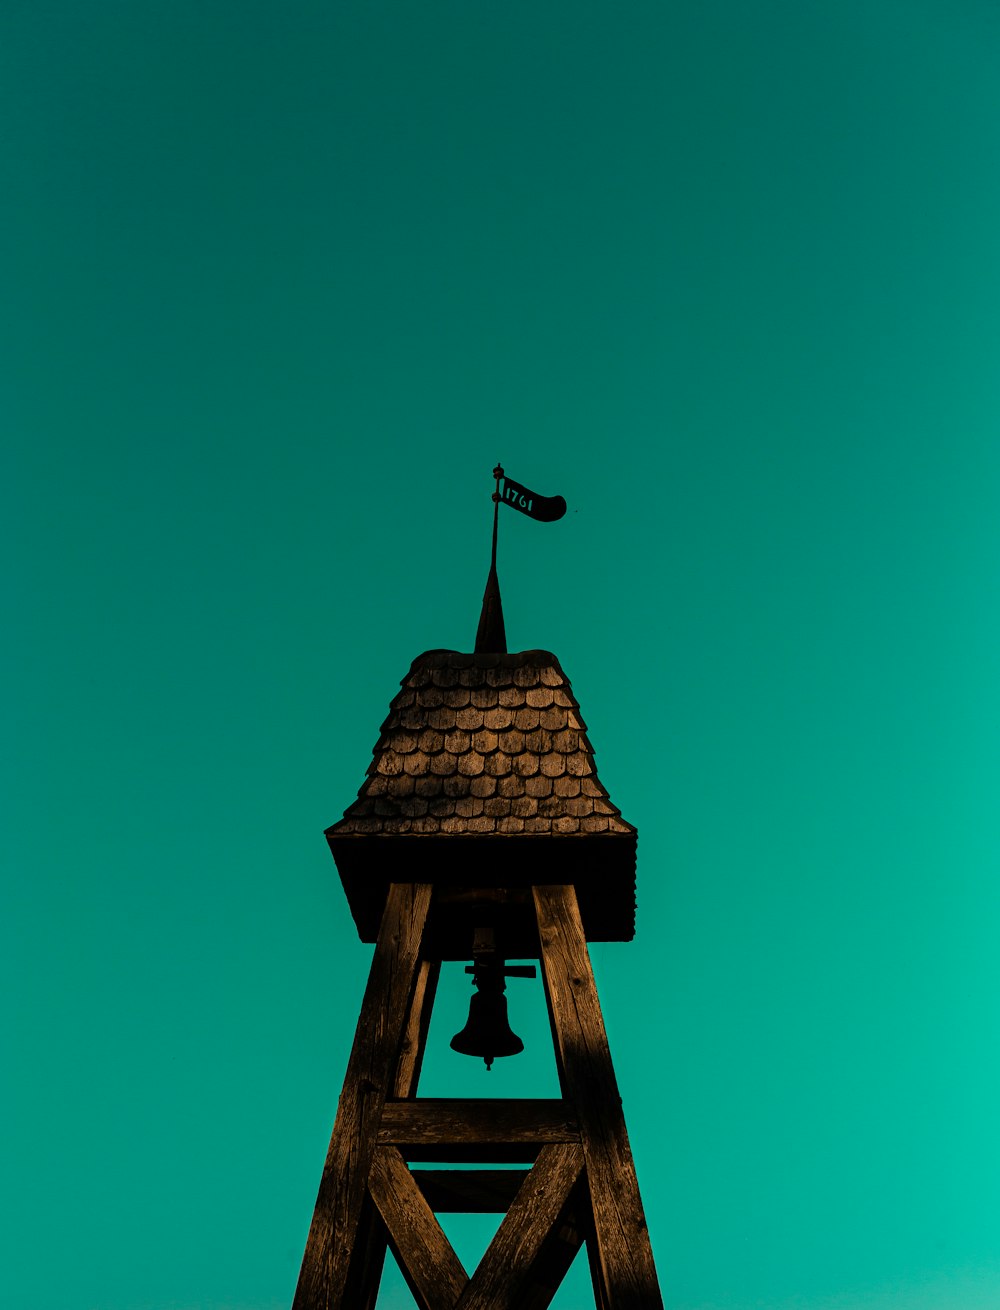 鐘のある茶色の木造の塔